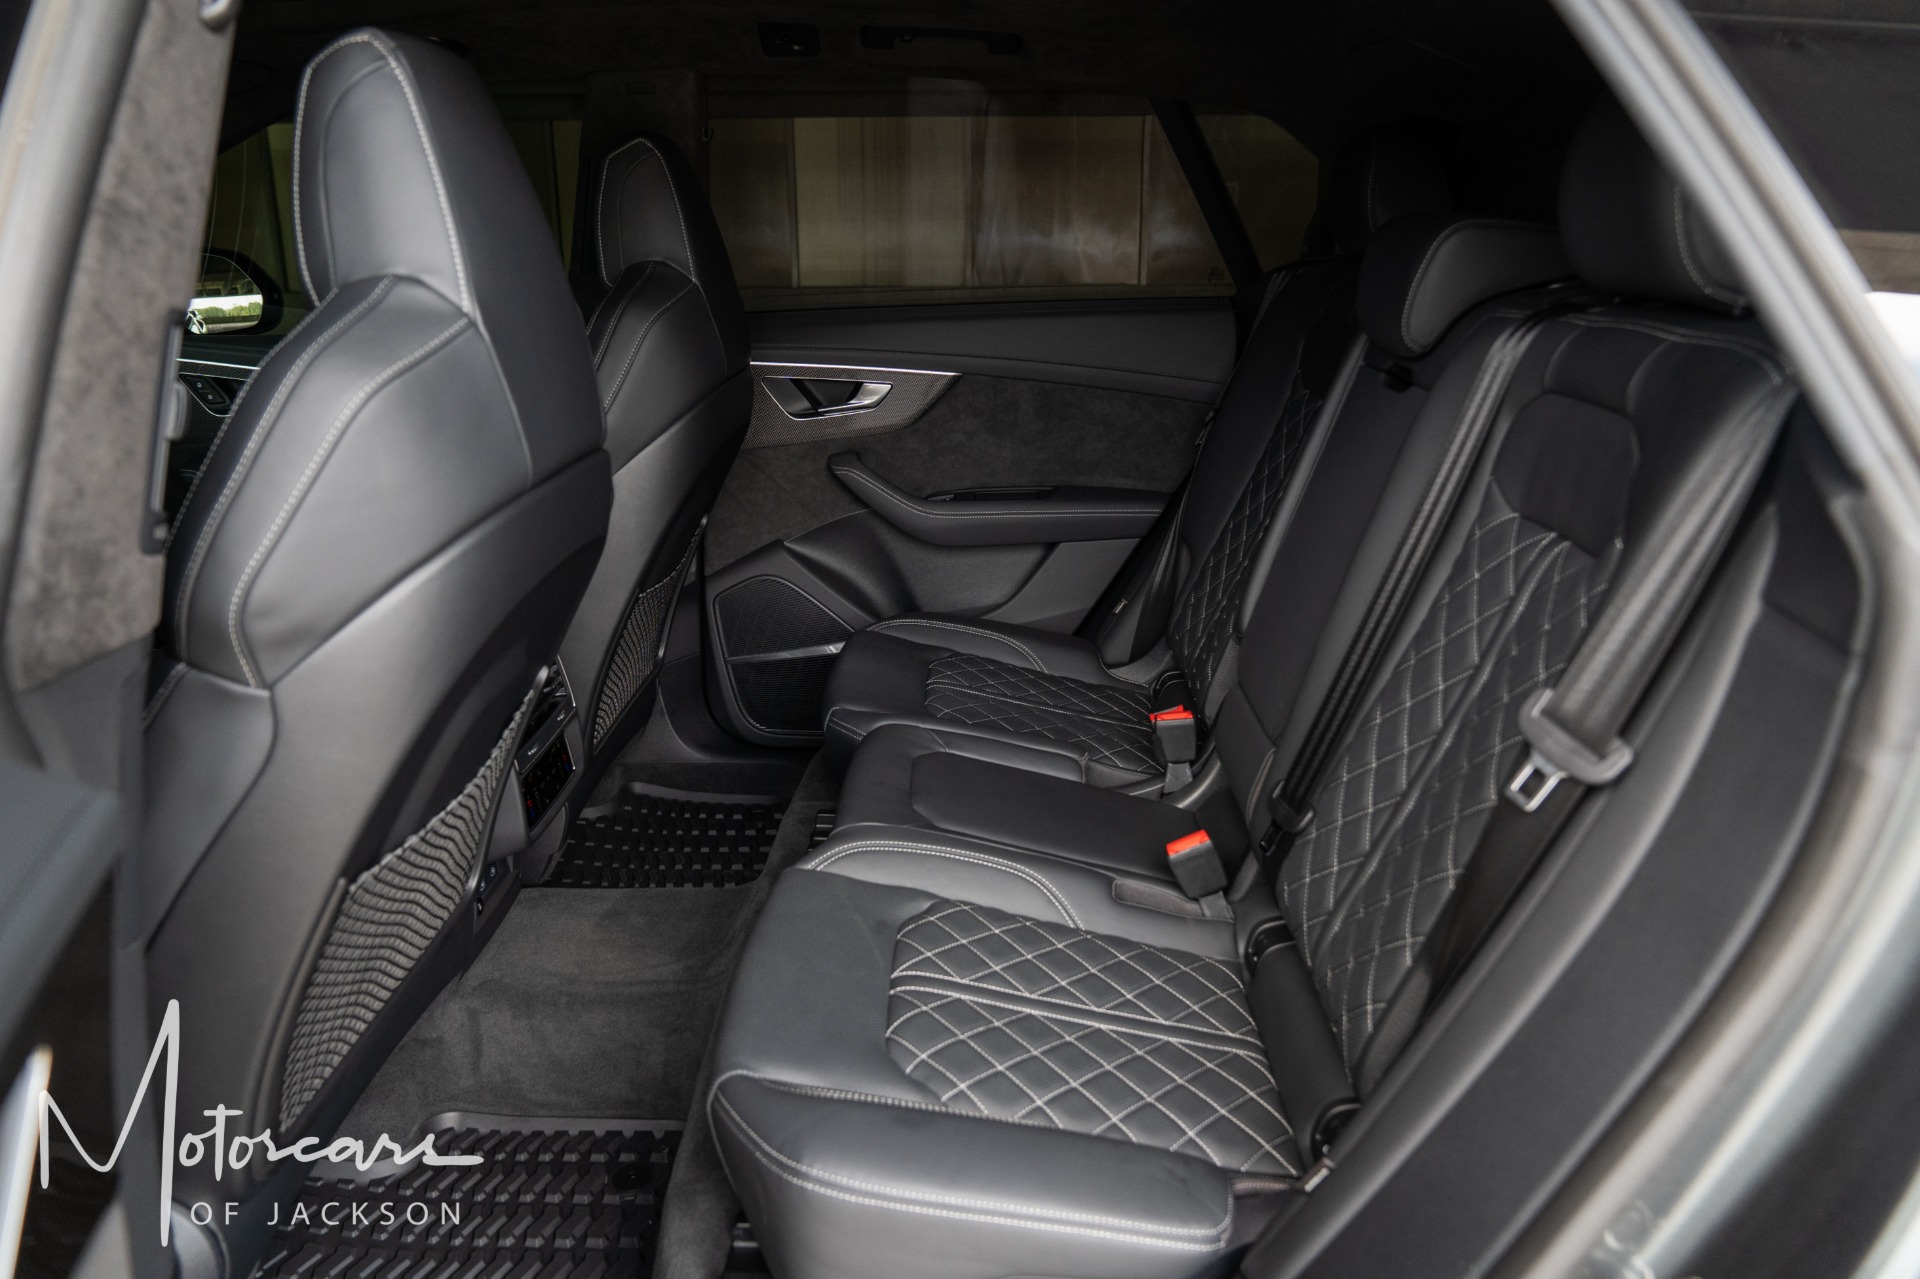 Used-2021-Audi-SQ8-Prestige-for-sale-Jackson-MS